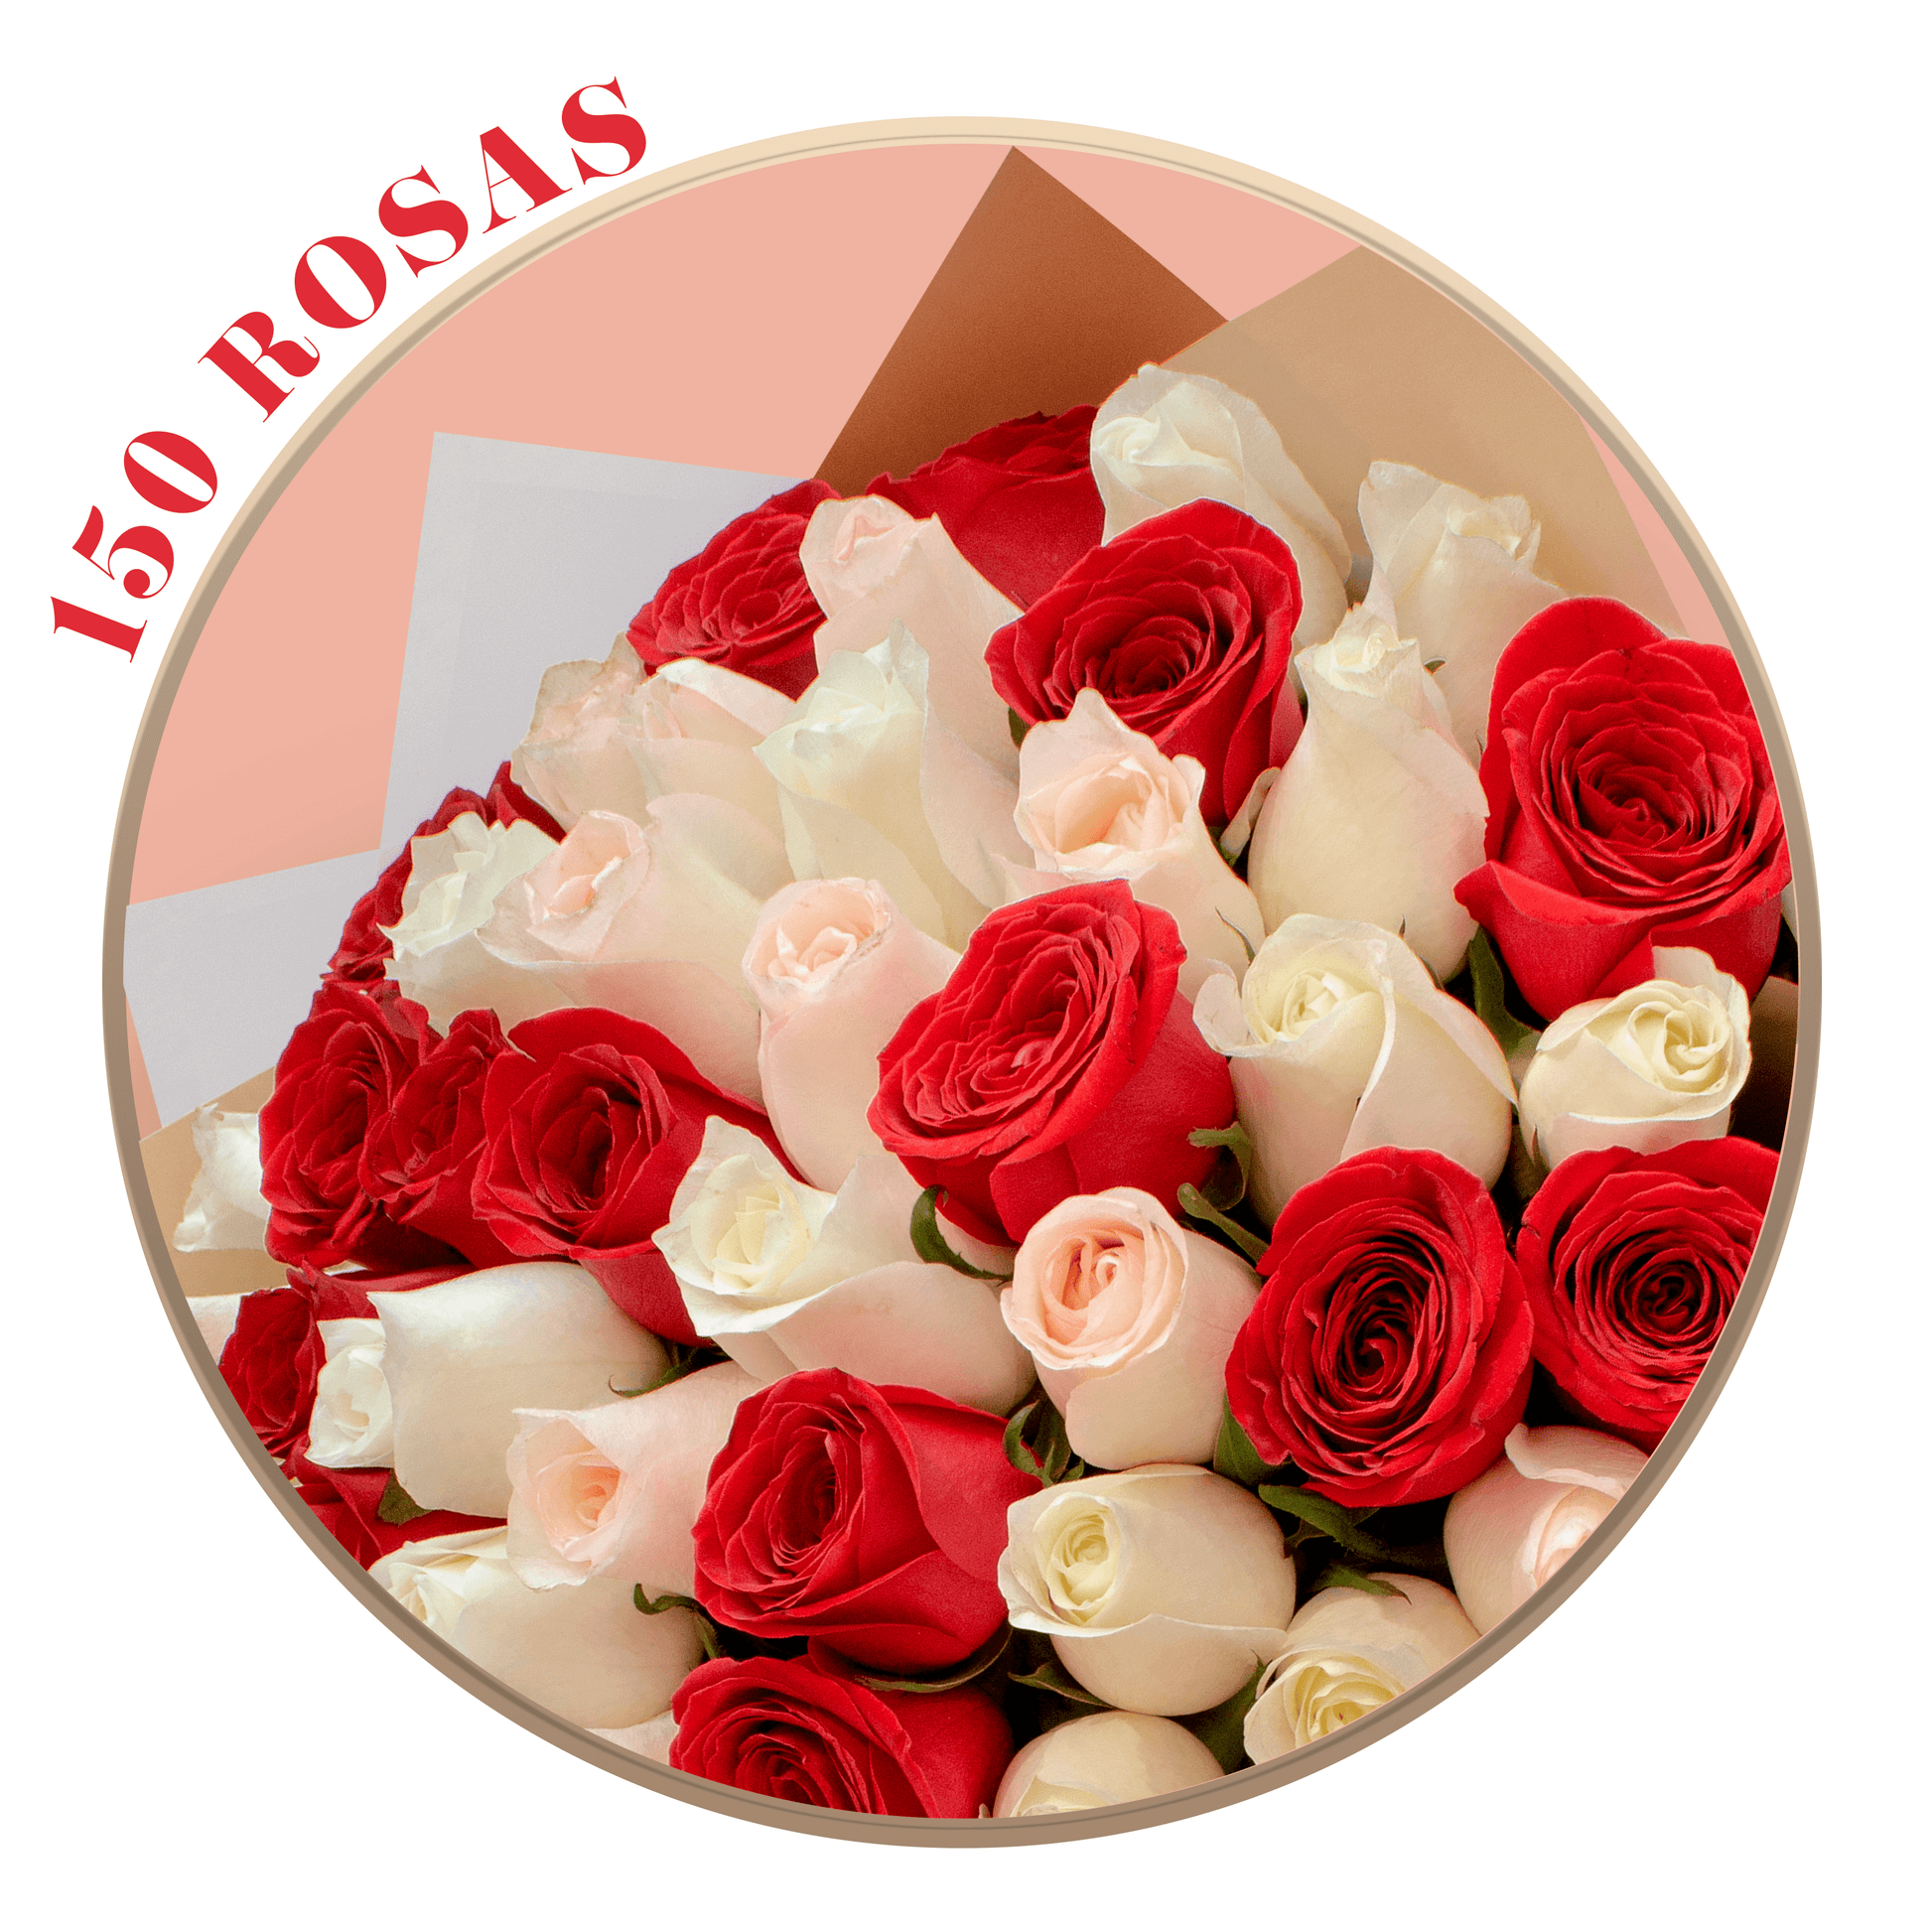 50, 100 o 150 Rosas Rojas, Hermosas, Peach Avalanche y Señorita en Ramillete